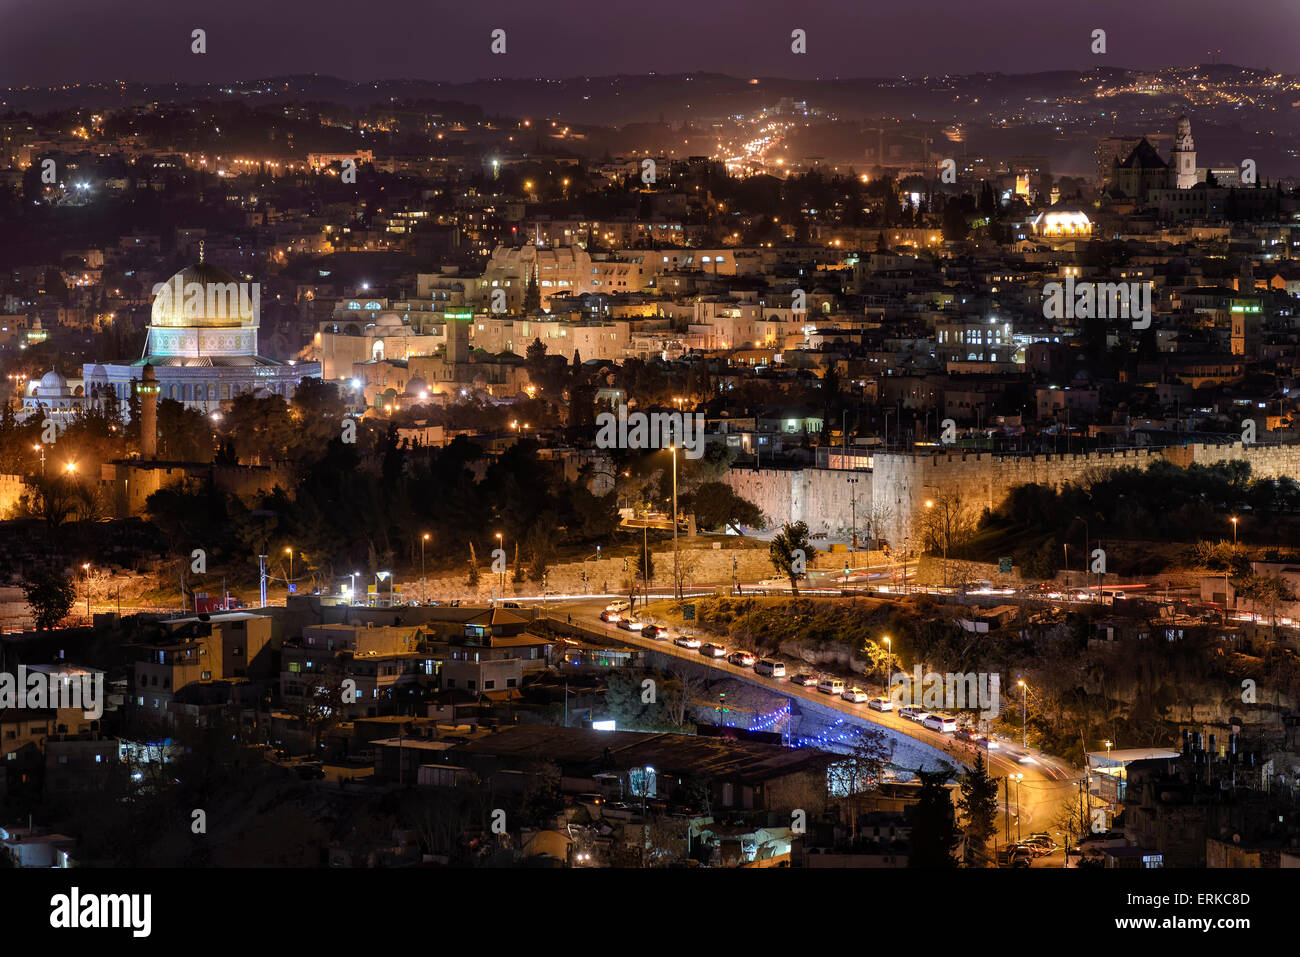 Ciudad vieja de Jerusalén por la noche, la cúpula de la roca, El Barrio Judío, Muro Occidental, el Muro de los Lamentos, Torre de David, Jerusalén, Israel Foto de stock